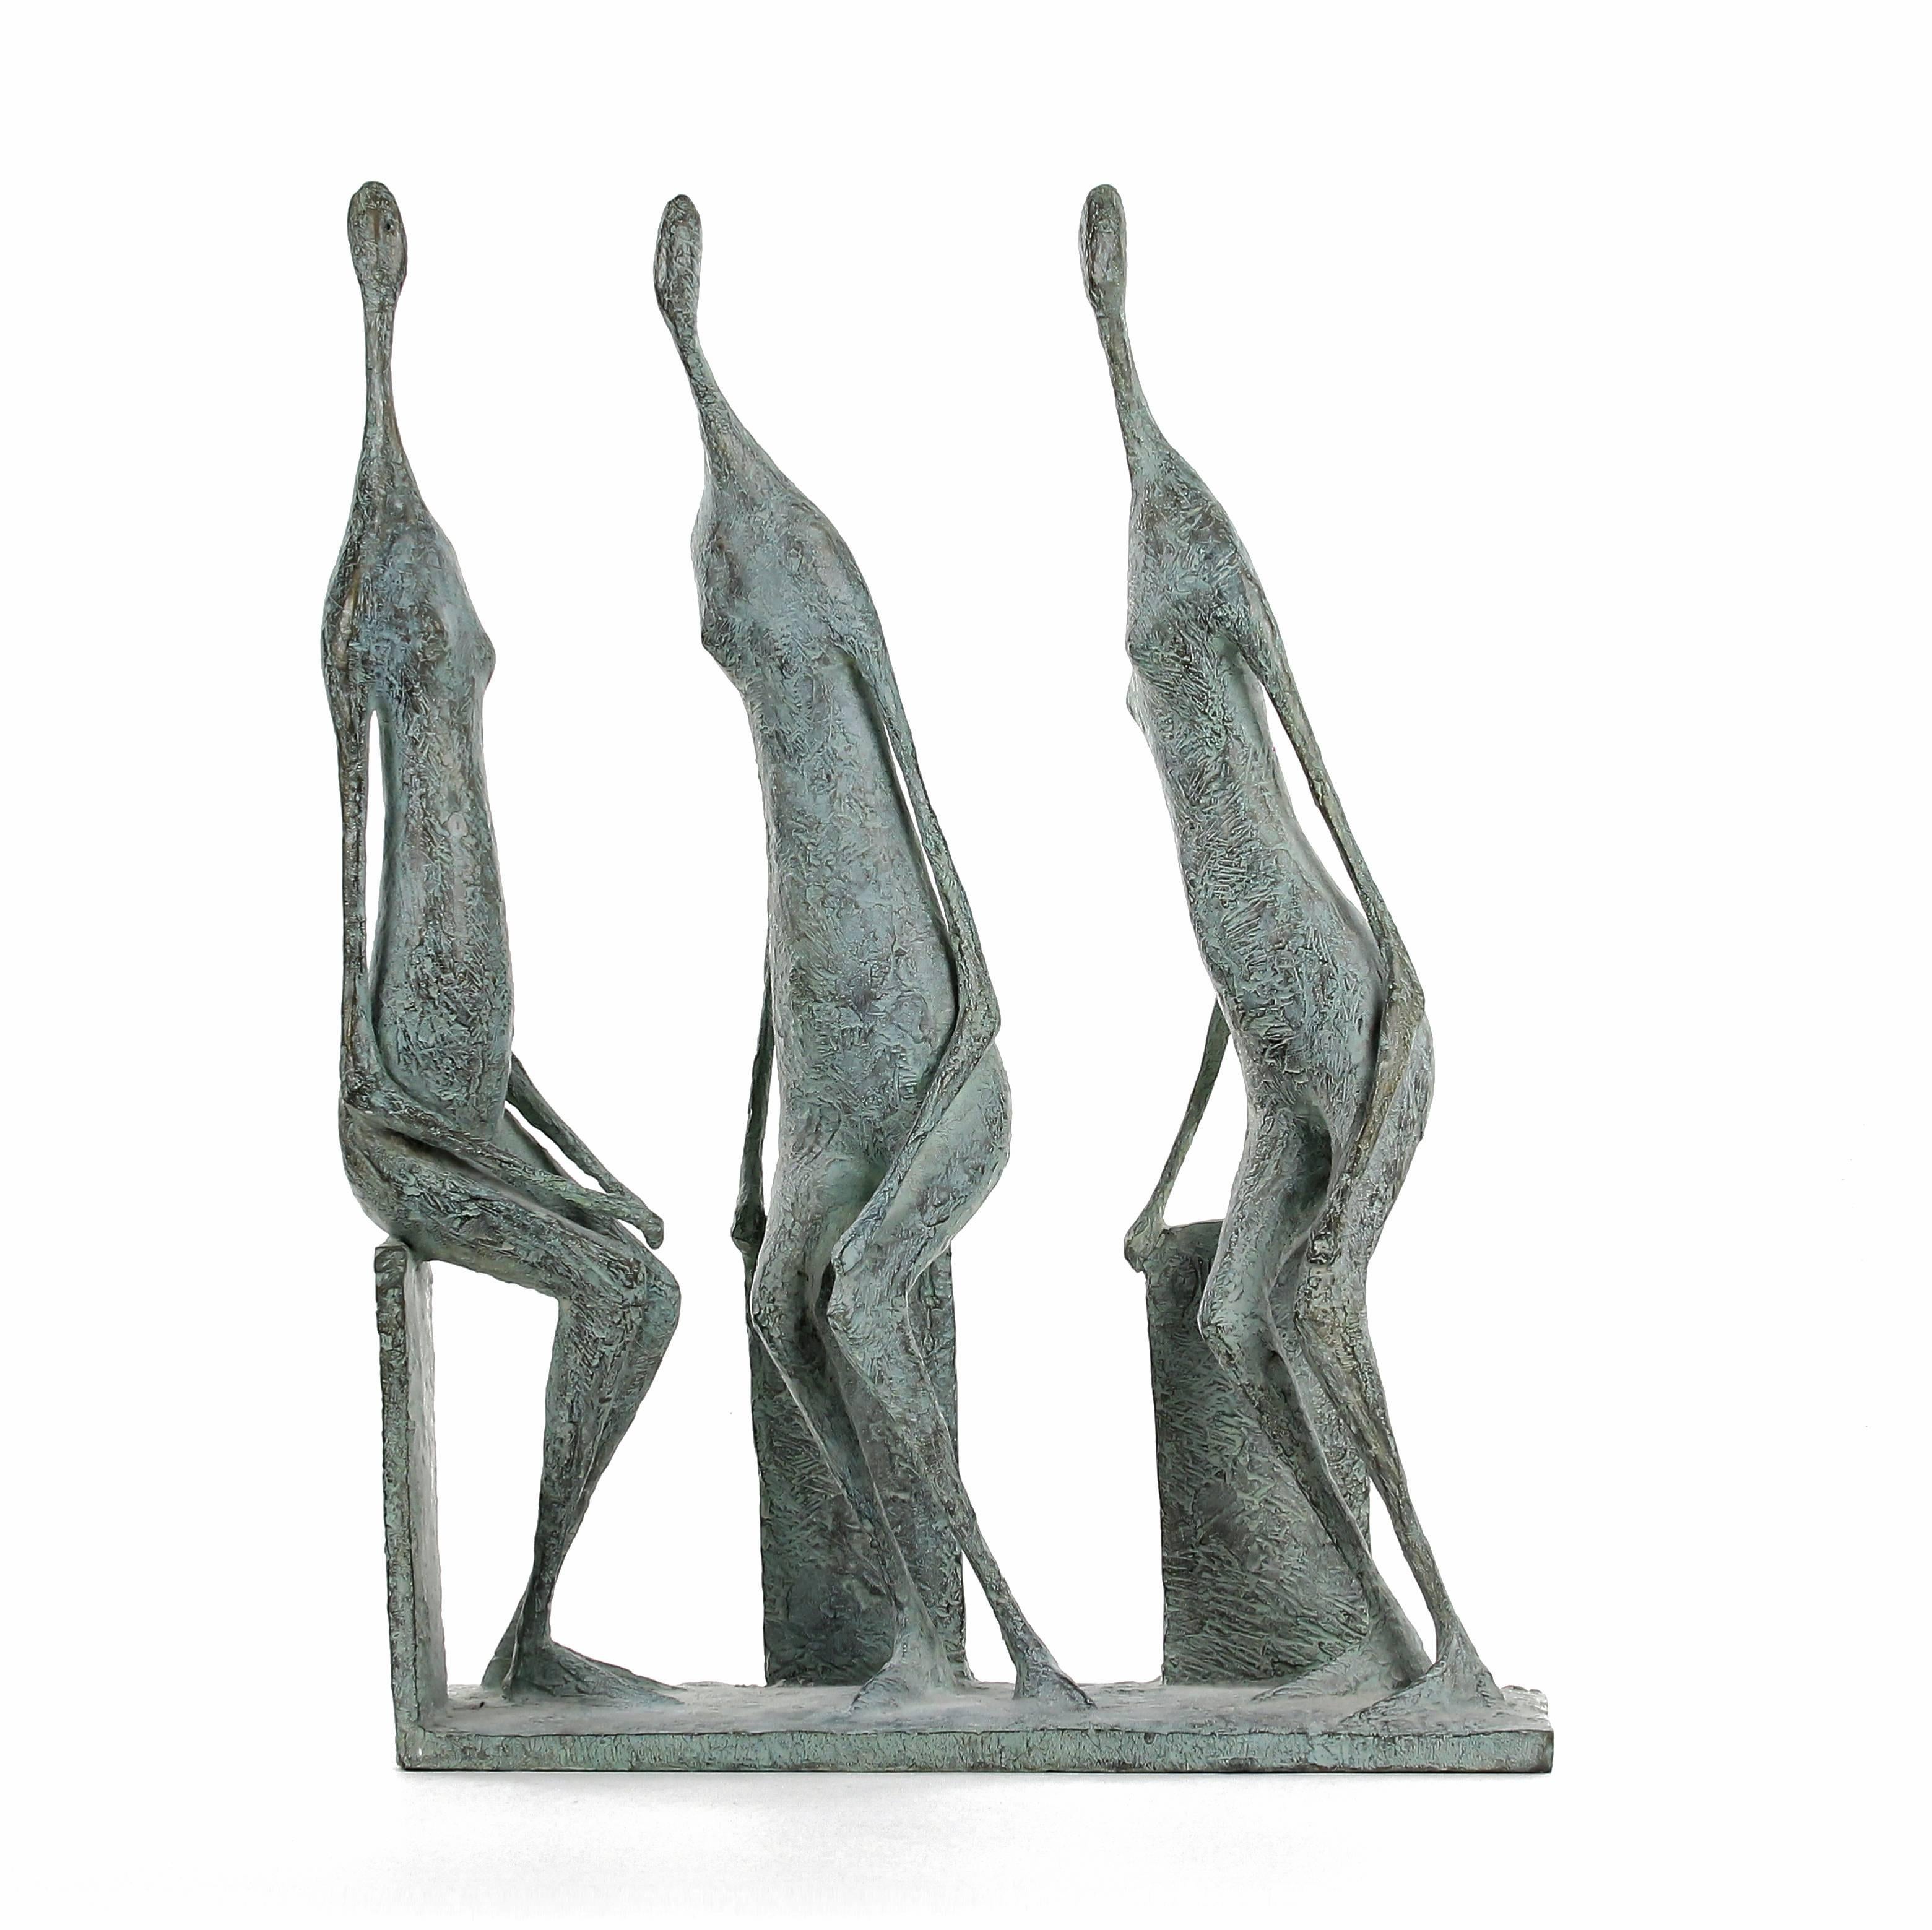 3 Sitzende Figuren II ist eine Bronzeskulptur des französischen Künstlers Pierre Yermia. "Diese in 3er-Gruppen angeordneten Figuren schaffen ein neues Spiel zwischen Positiv und Negativ und eröffnen dem Betrachter eine ganz neue Welt. Die Nähe